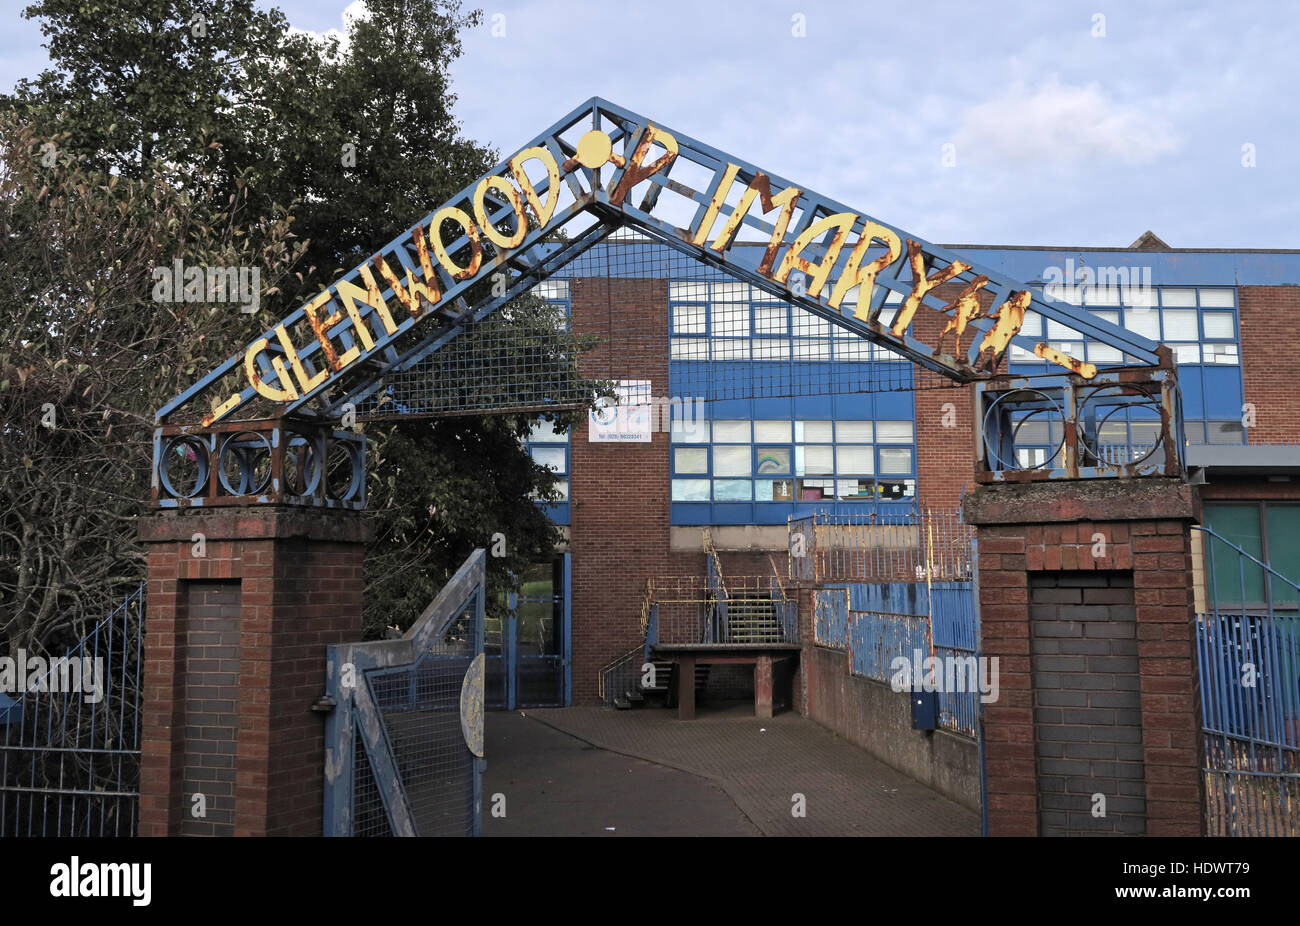 L'école primaire de Glenwood, off Shankill Road West Belfast, Irlande du Nord, Royaume-Uni - Entrée Banque D'Images